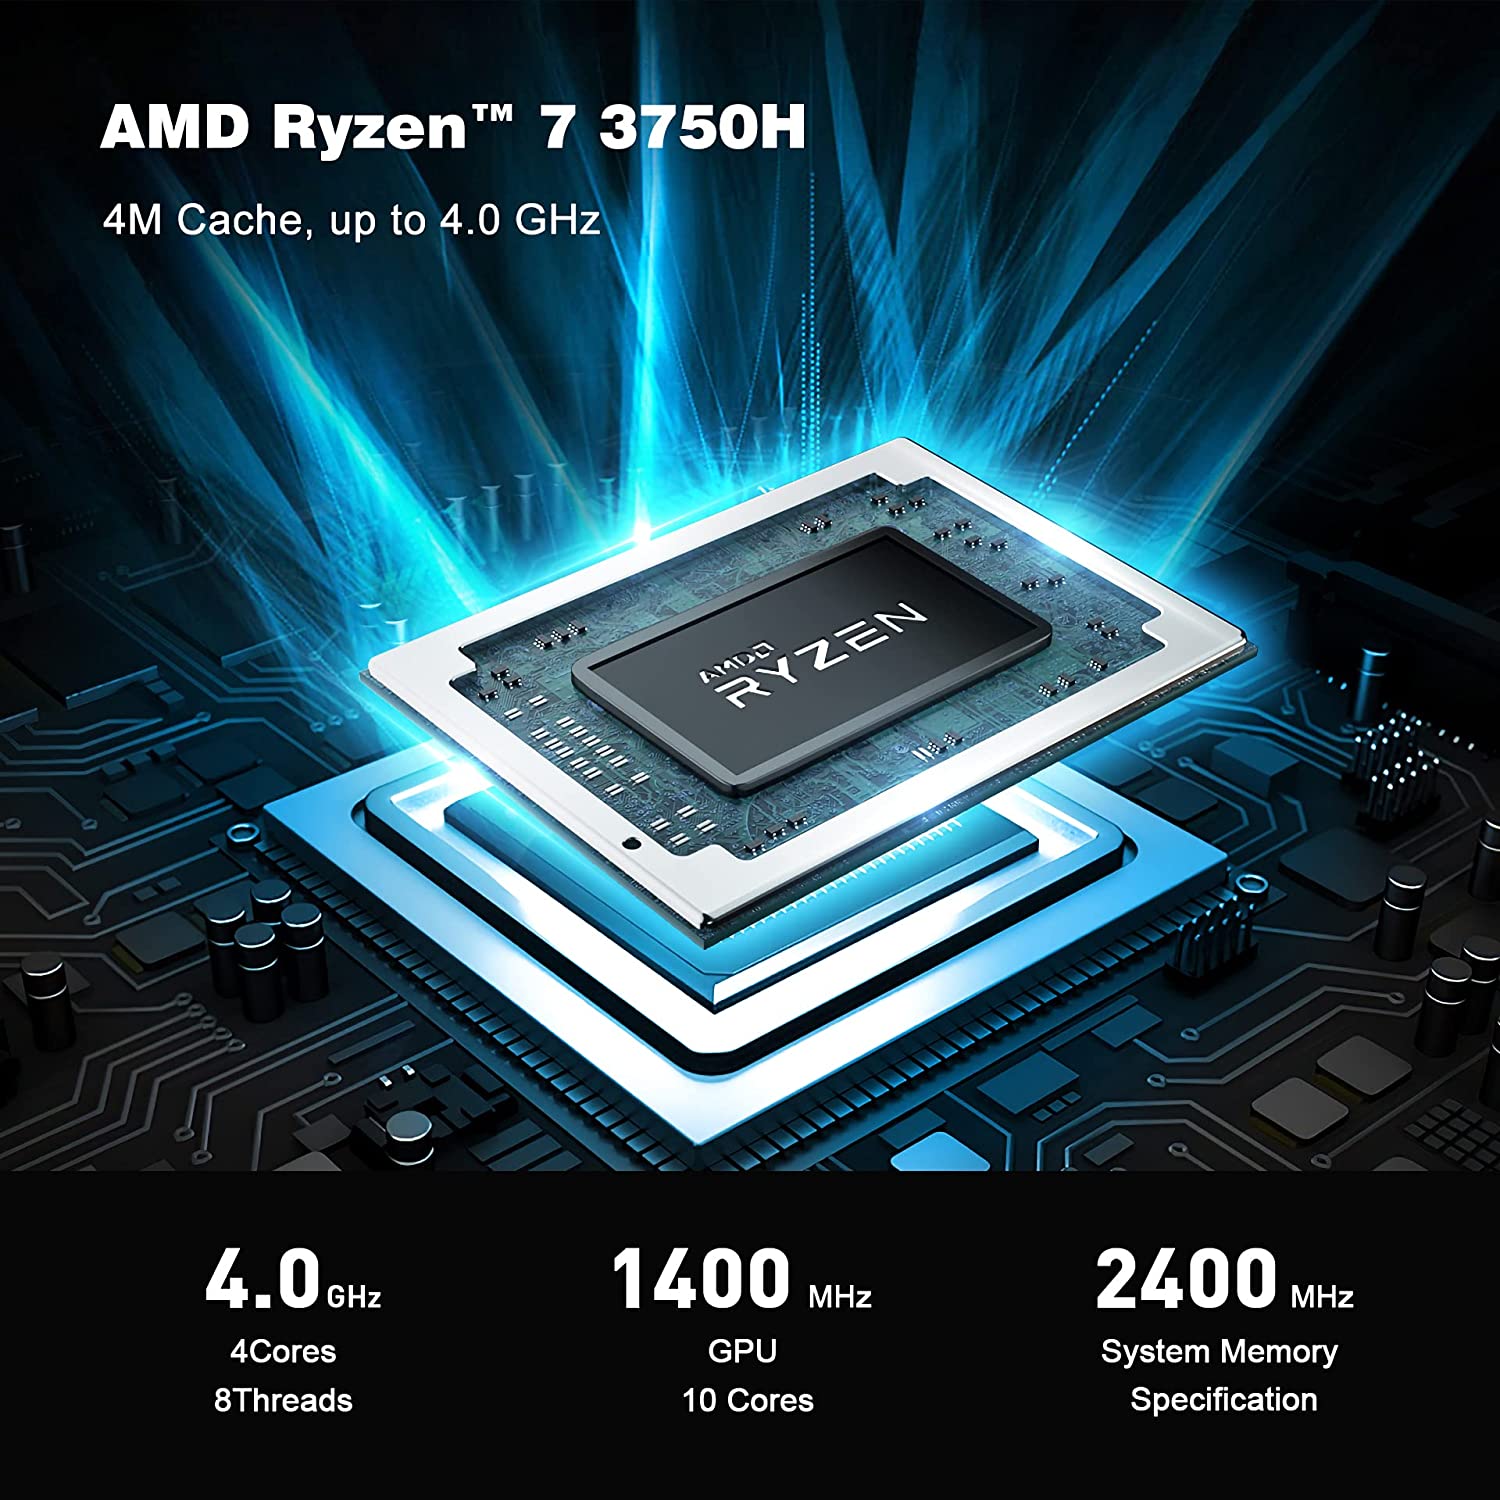  Mini PC Ryzen 7 3750H AMD Processor(up to 4.0GHz